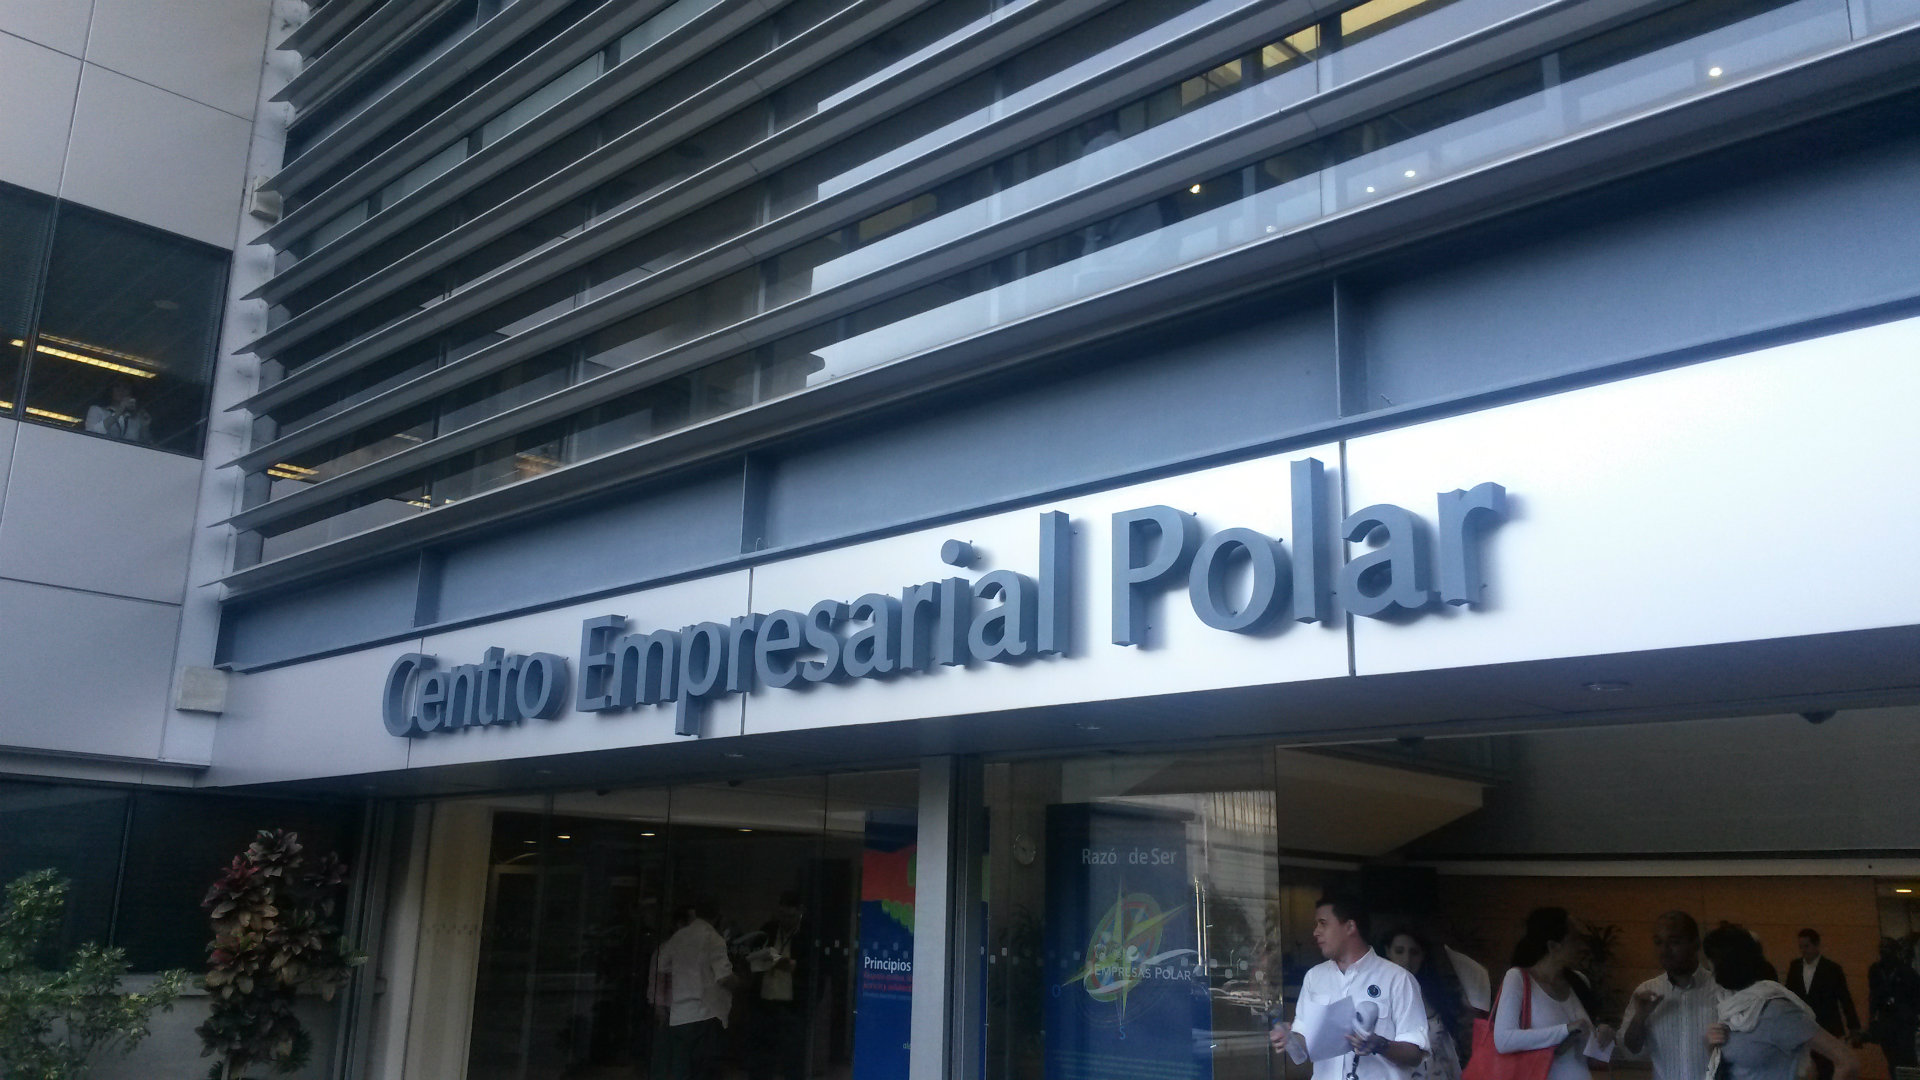 Centro Empresarial Polar